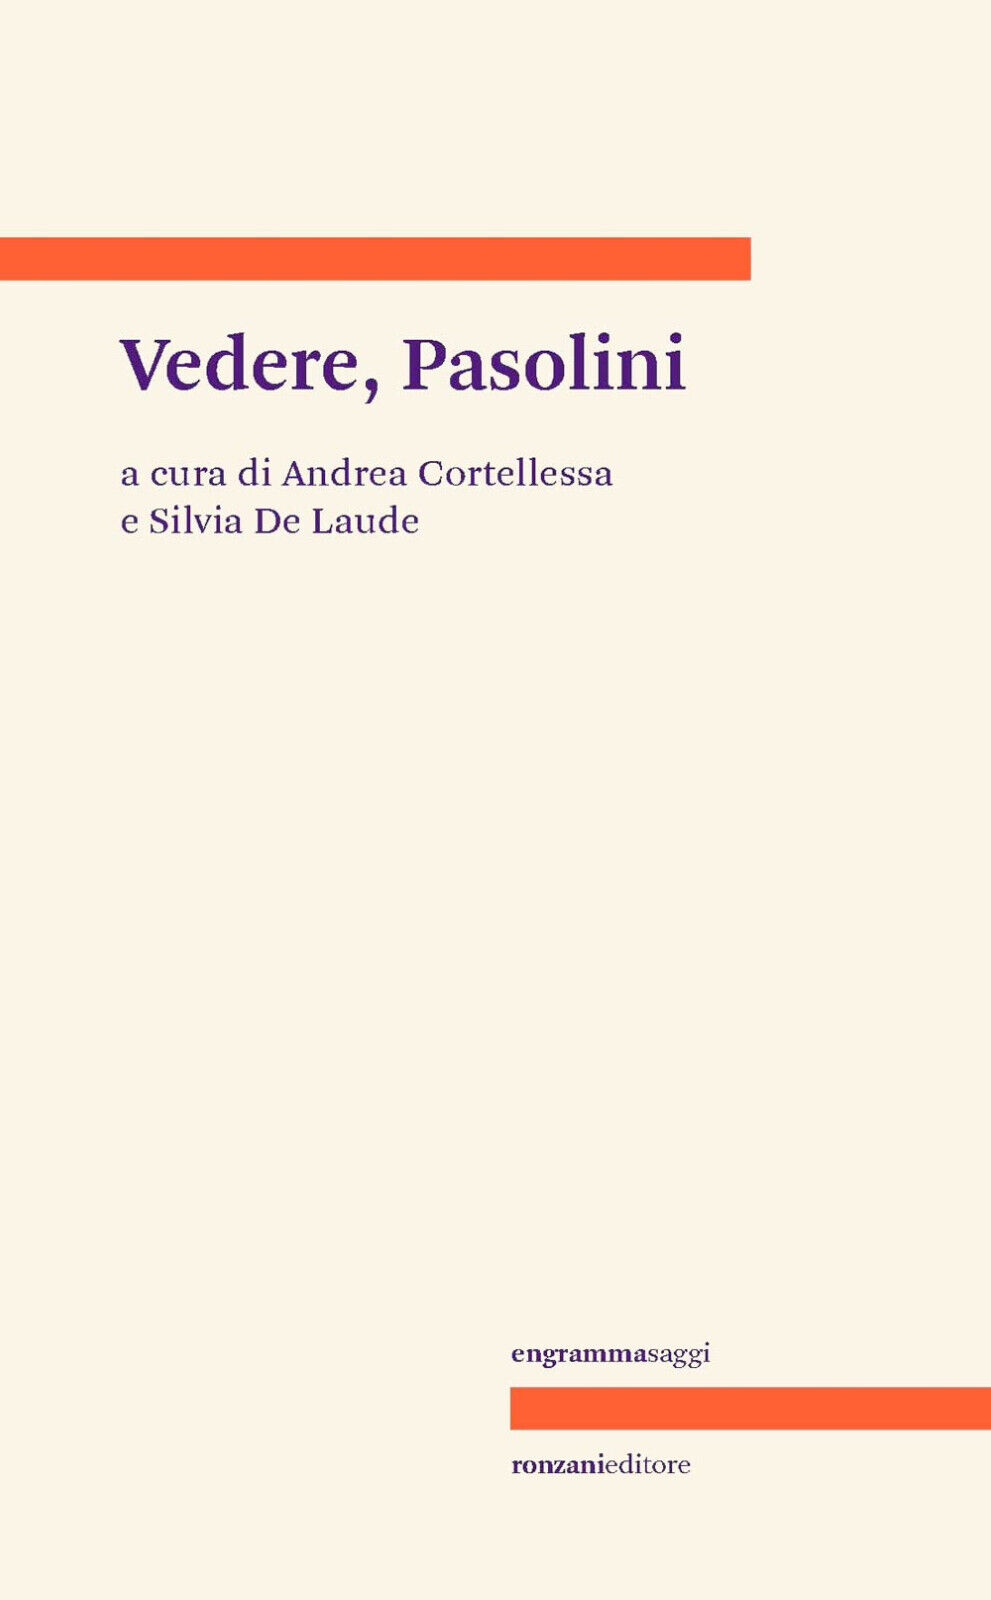 Vedere, Pasolini - A. Cortellessa, S. De Laude - Ronzani, 2022